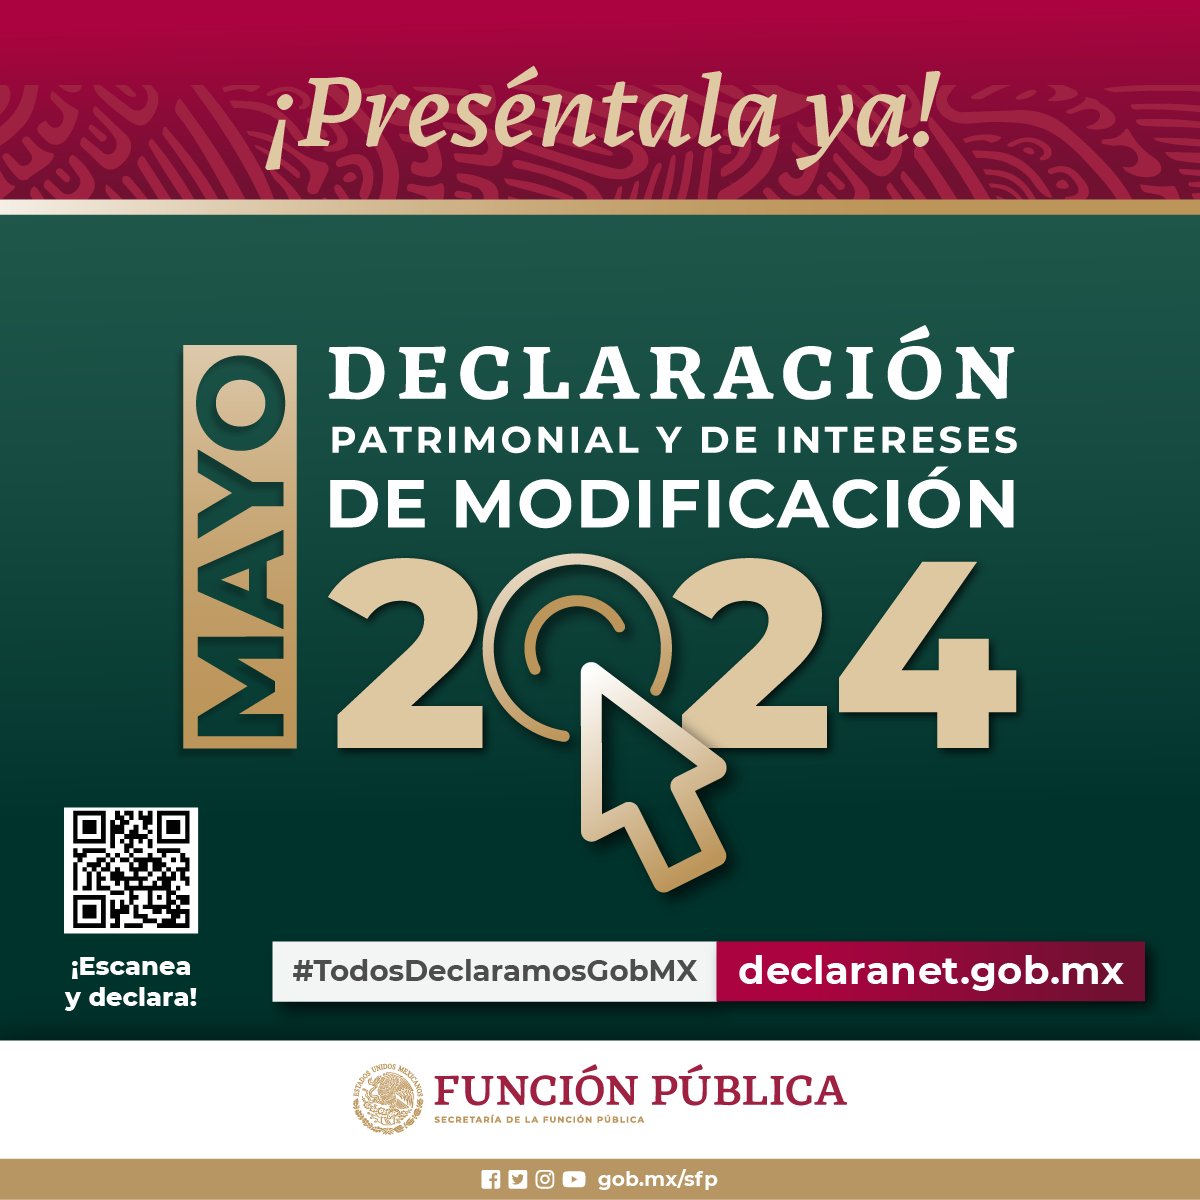 Persona servidora pública federal: Recuerda que mayo es el mes para presentar la #DeclaraciónPatrimonial y de intereses, en la modalidad de modificación 2024. Preséntala ya ingresando a #DeclaraNet ➡️ declaranet.gob.mx #DeclaraNet2024 #TodosDeclaramosGobMx